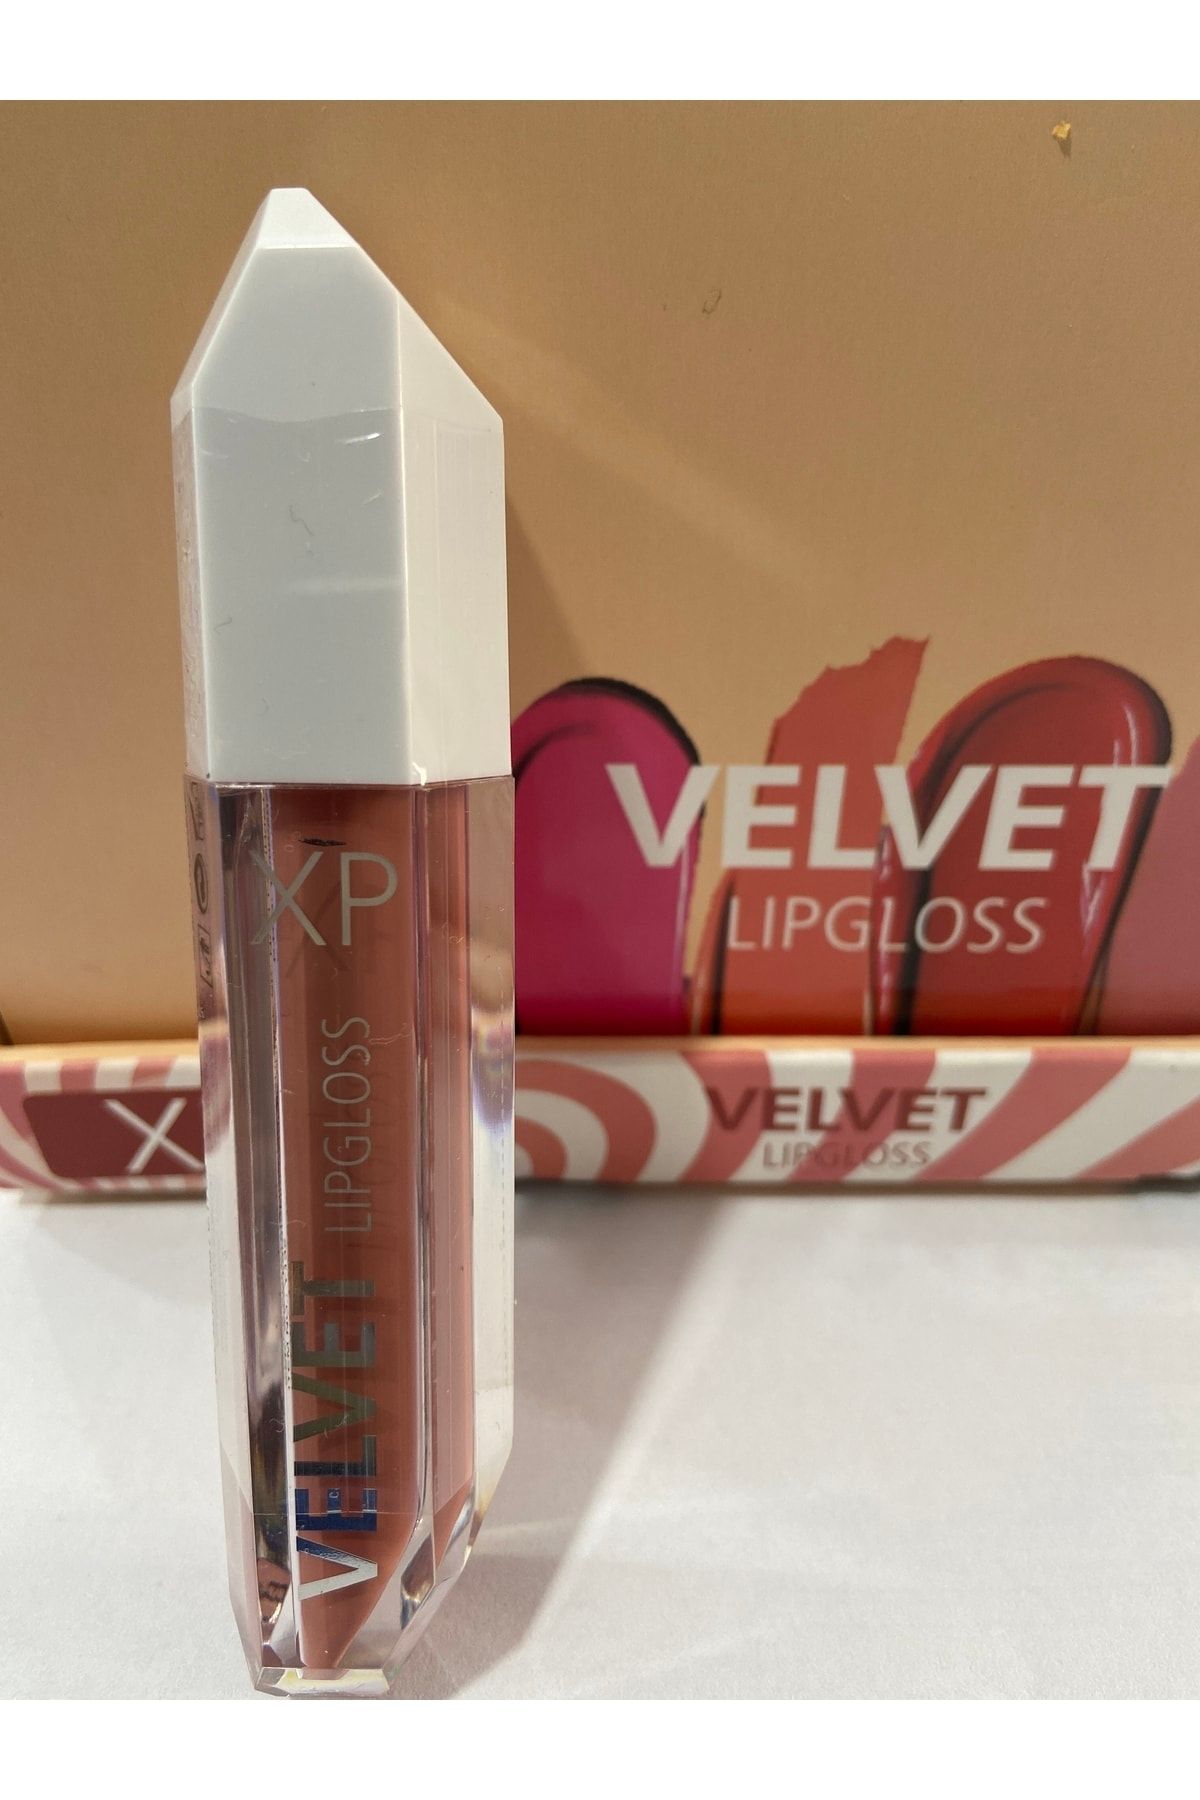 xp Velvet Lipgloss 03